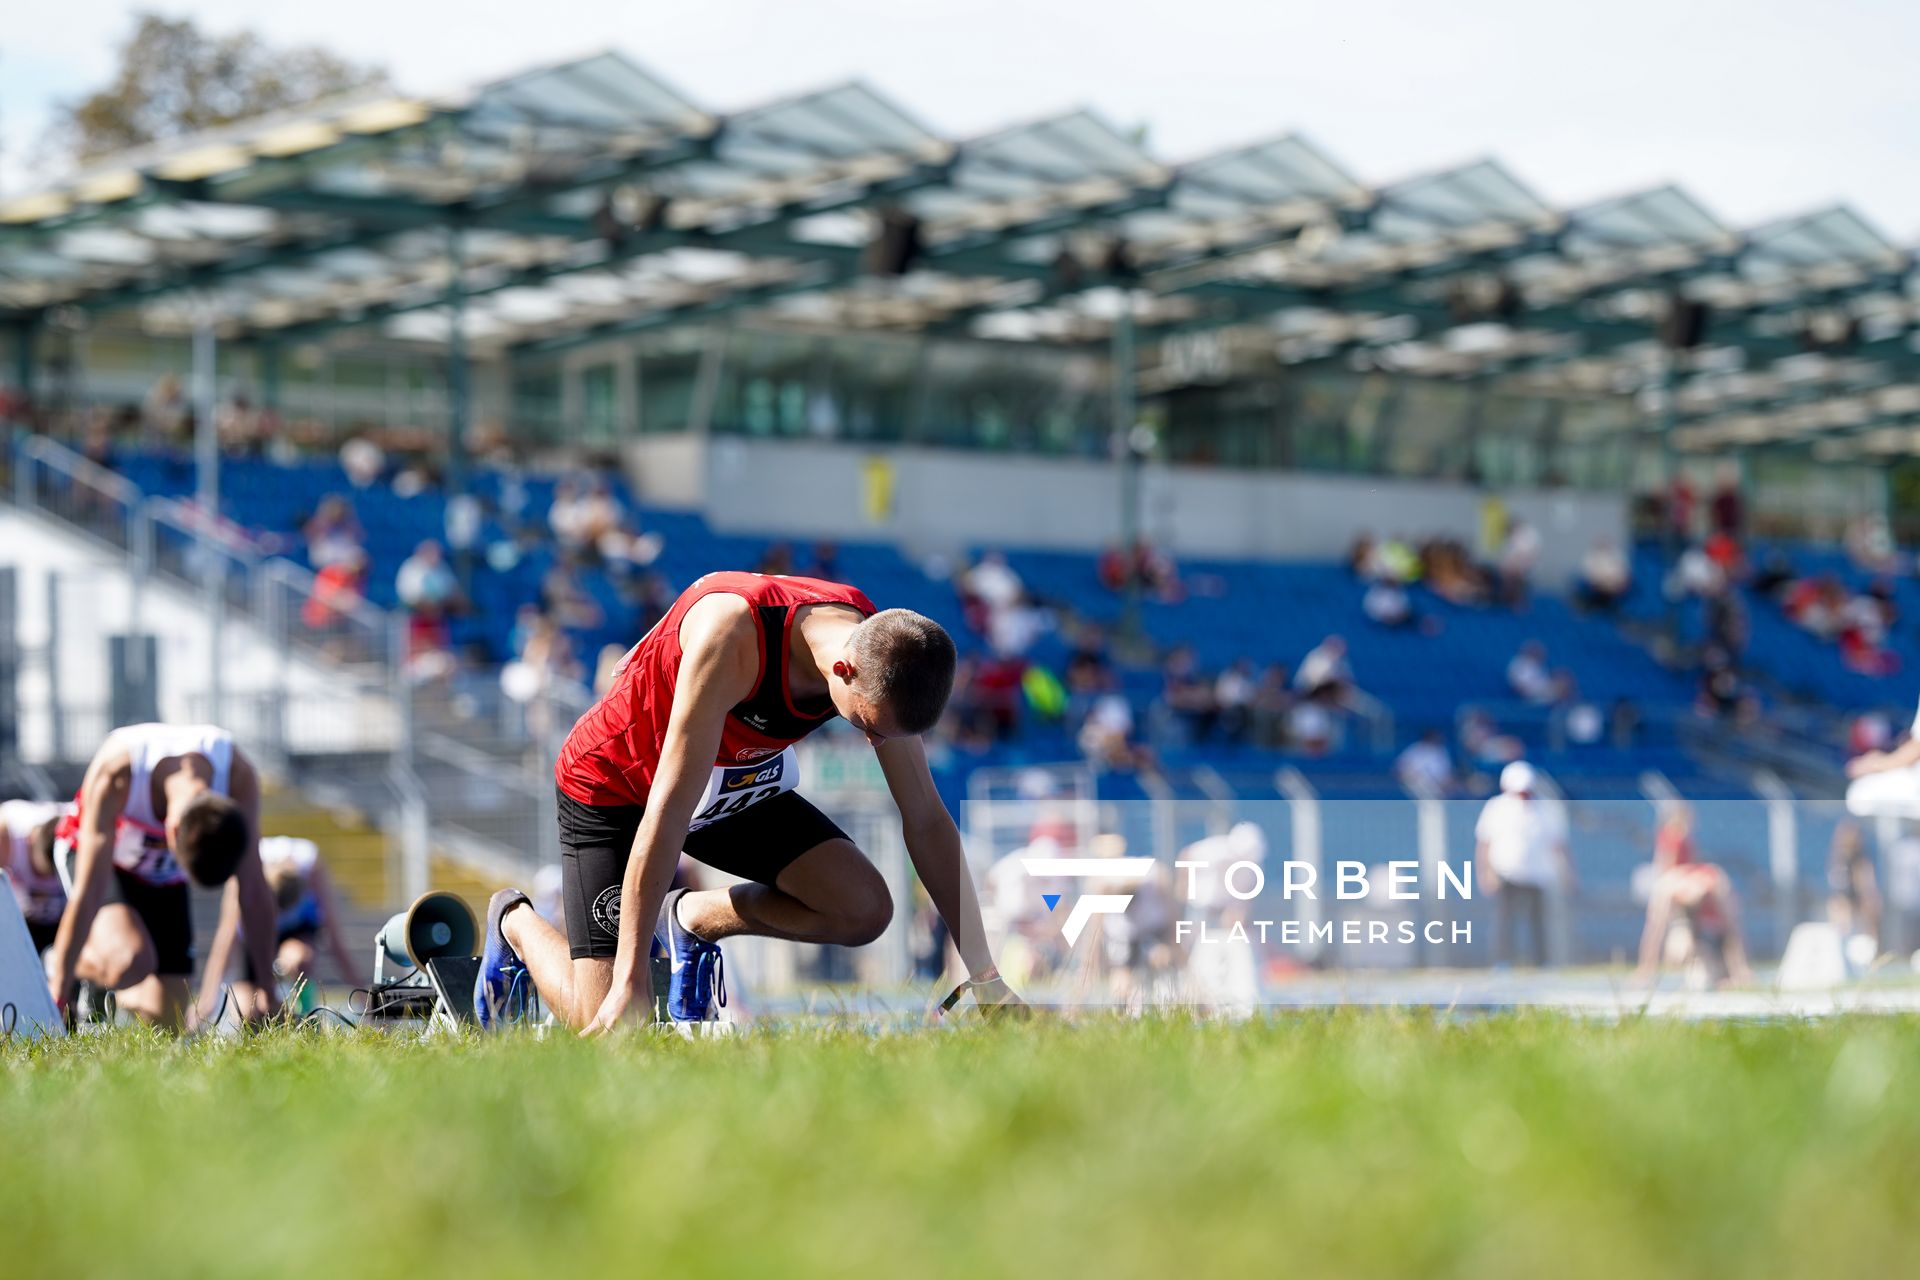 Florian Kroll (LG Osnabrueck) im 400m Vorlauf am 04.09.2020 waehrend den deutschen Leichtathletik-Jugendmeisterschaften im Frankenstadion in Heilbronn (Tag1)